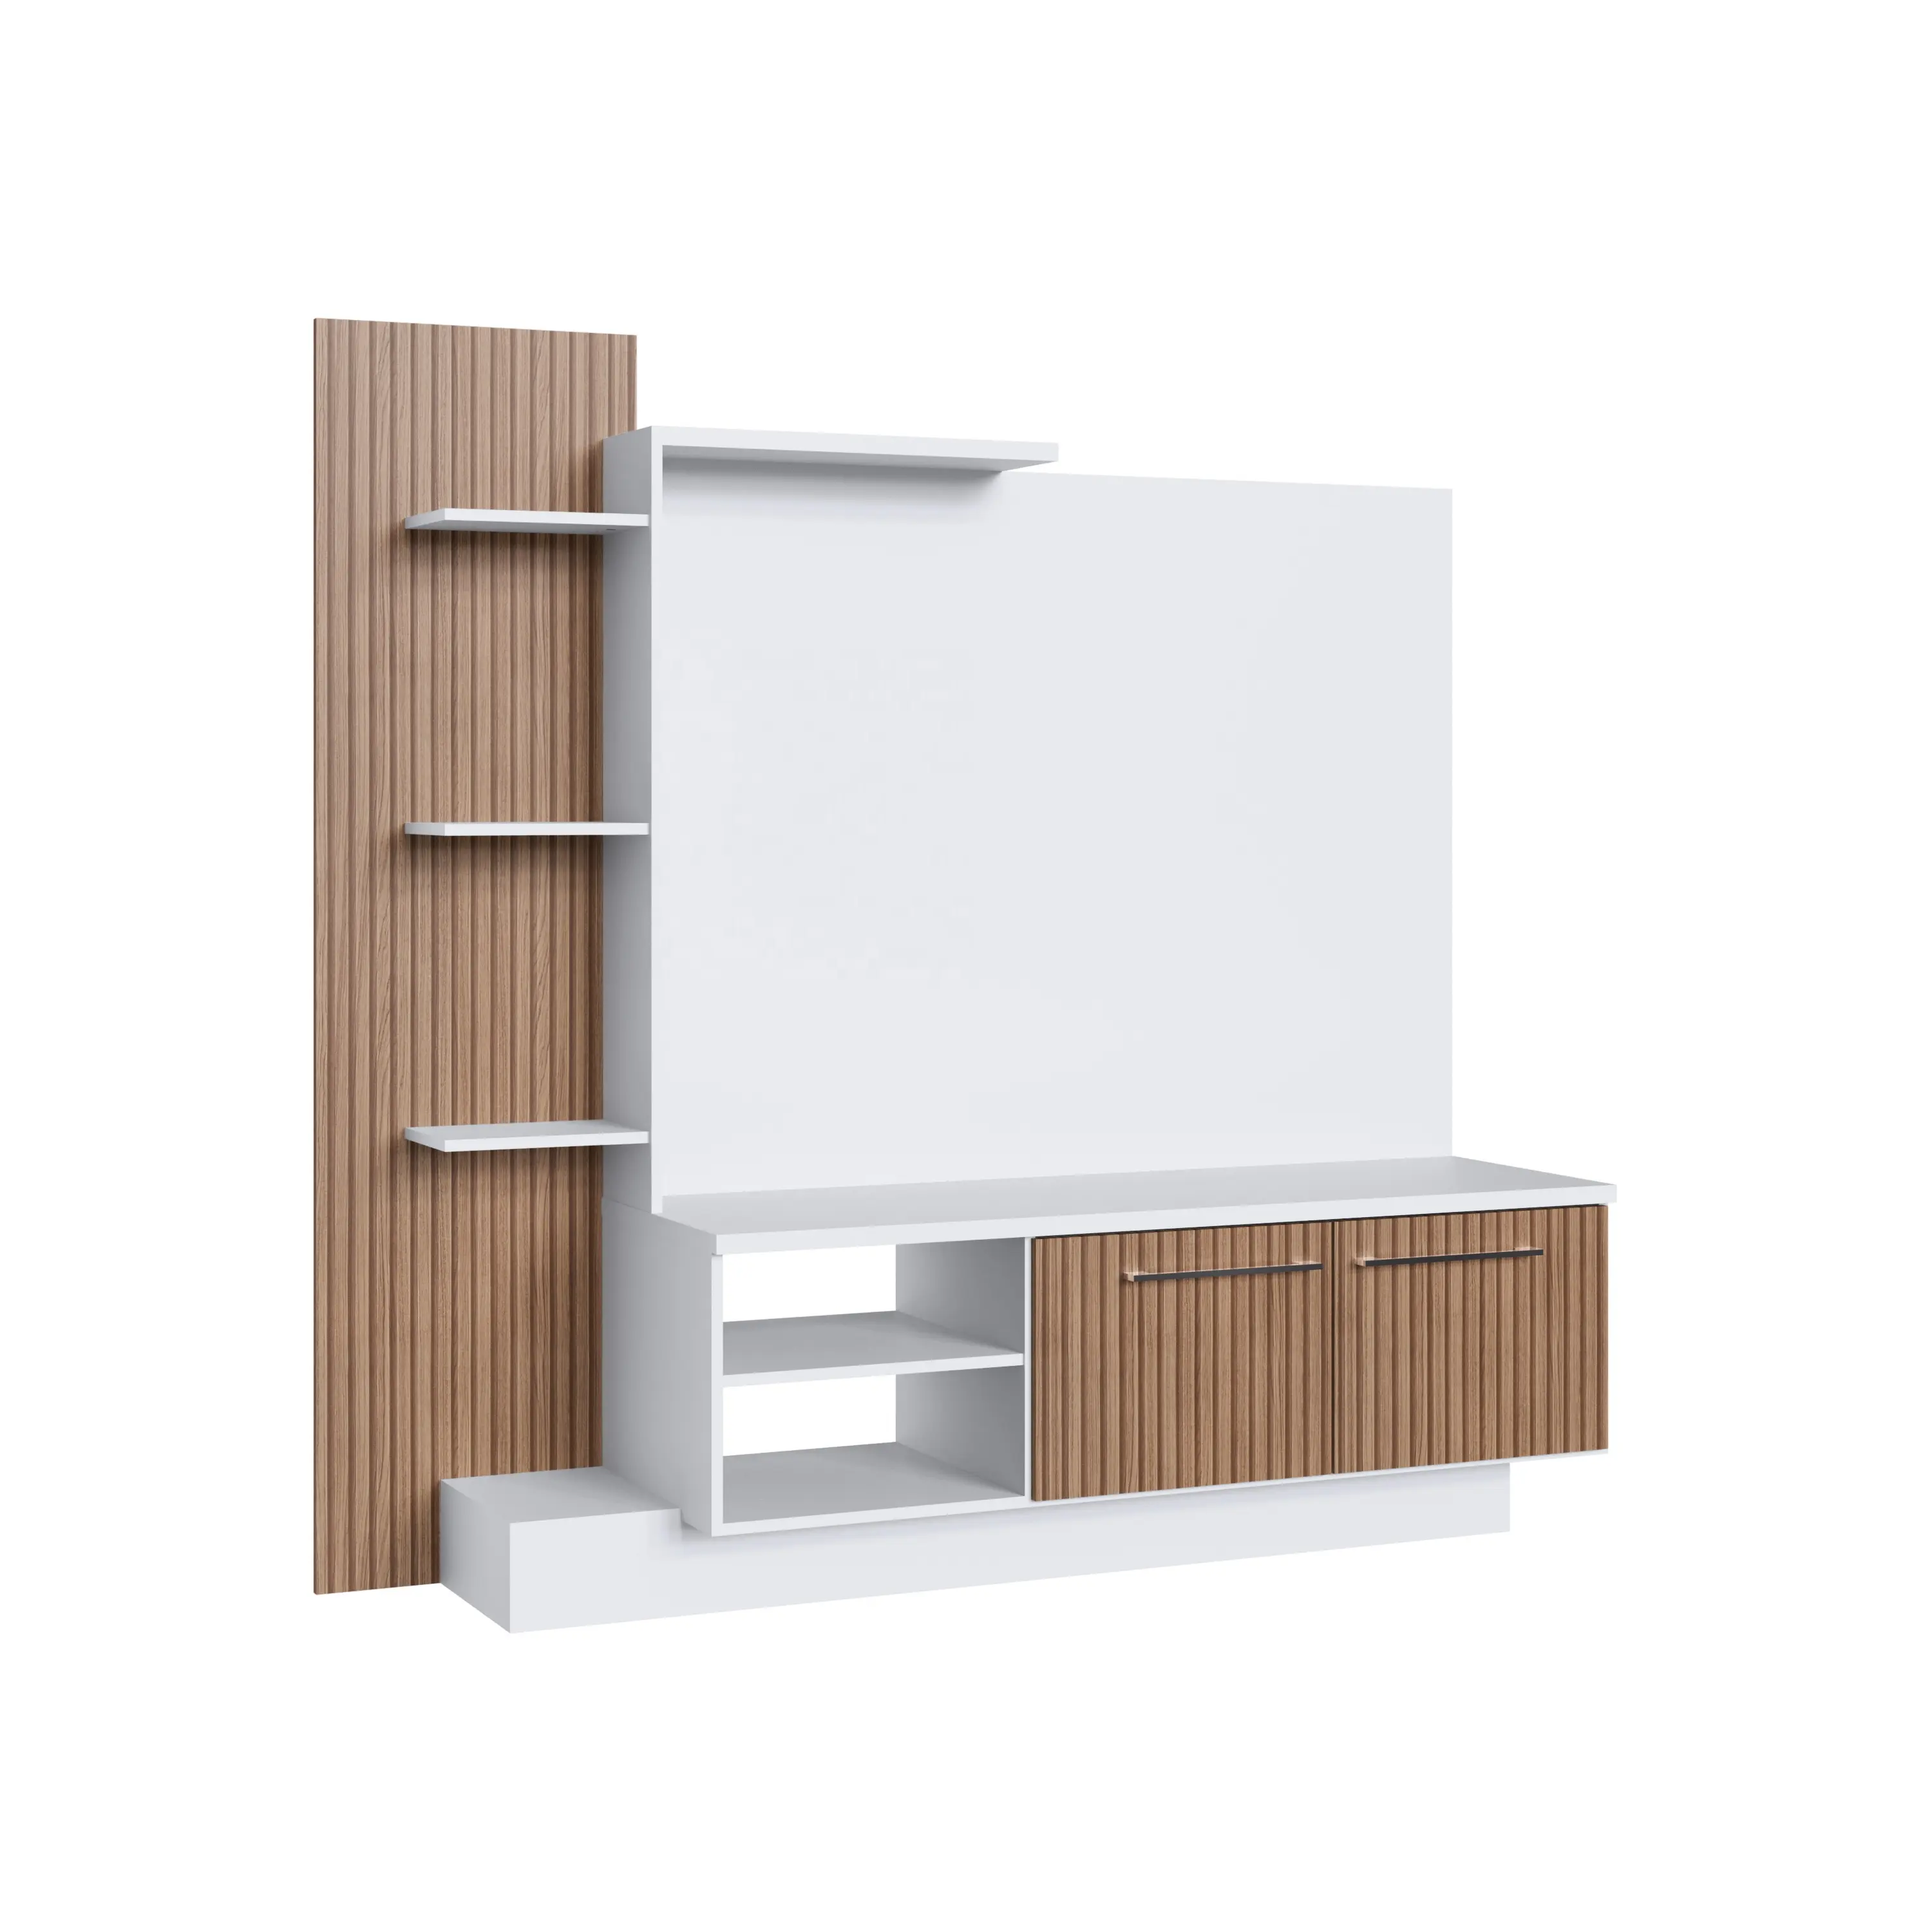 Centro de entretenimiento de estilo moderno para el hogar, muebles de salón de madera de 2 puertas con tablero de partículas Milano/blanco, diseño de Brasil